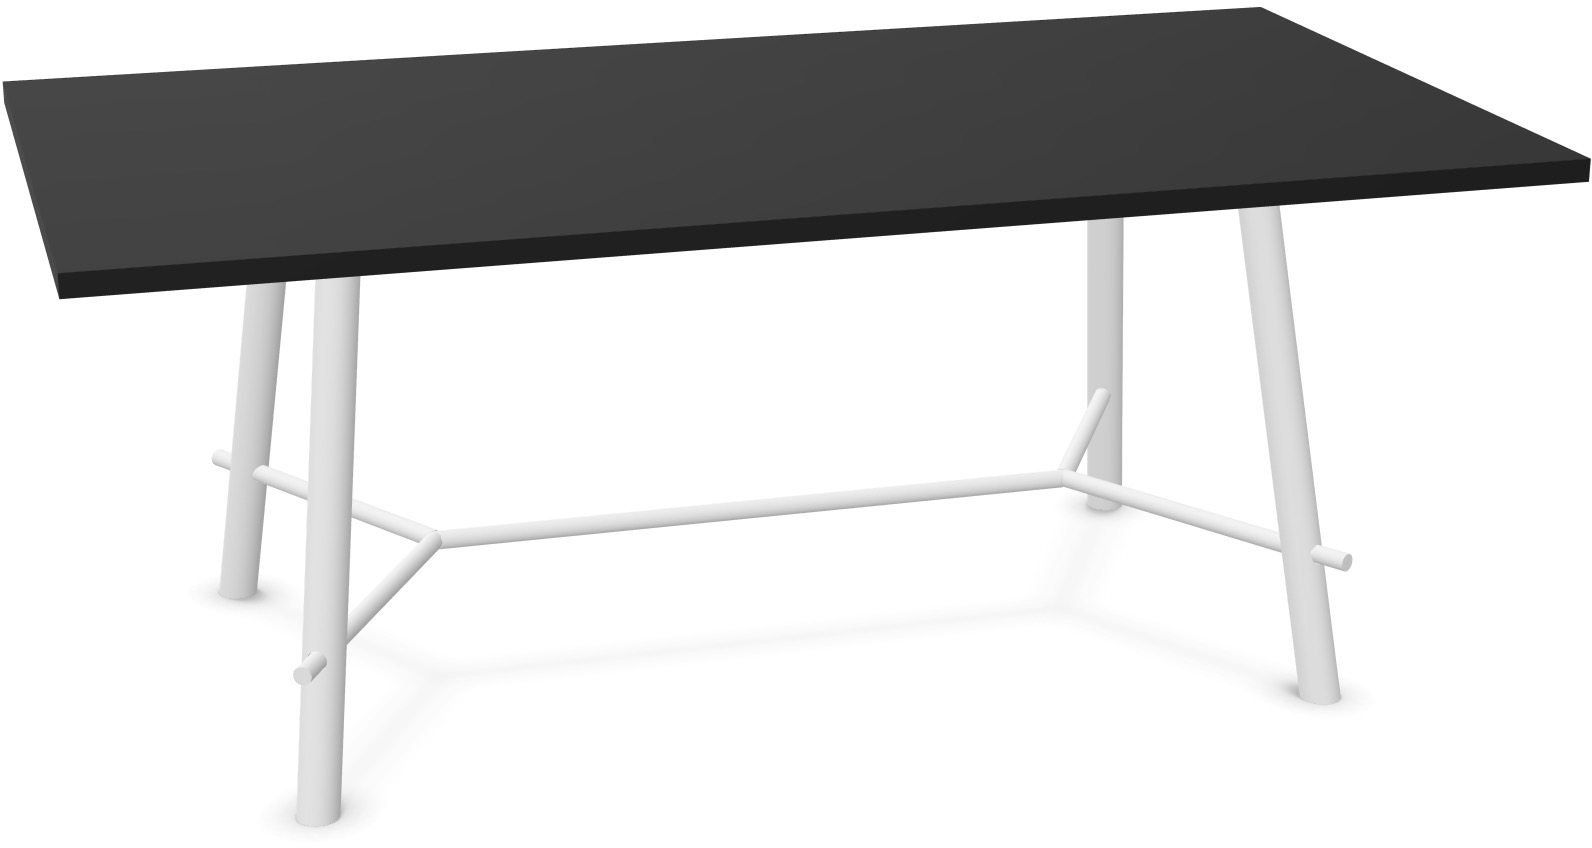 Record Living Maxi Tisch in Schwarz / Eiche weiss präsentiert im Onlineshop von KAQTU Design AG. Esstisch ist von Infiniti Design